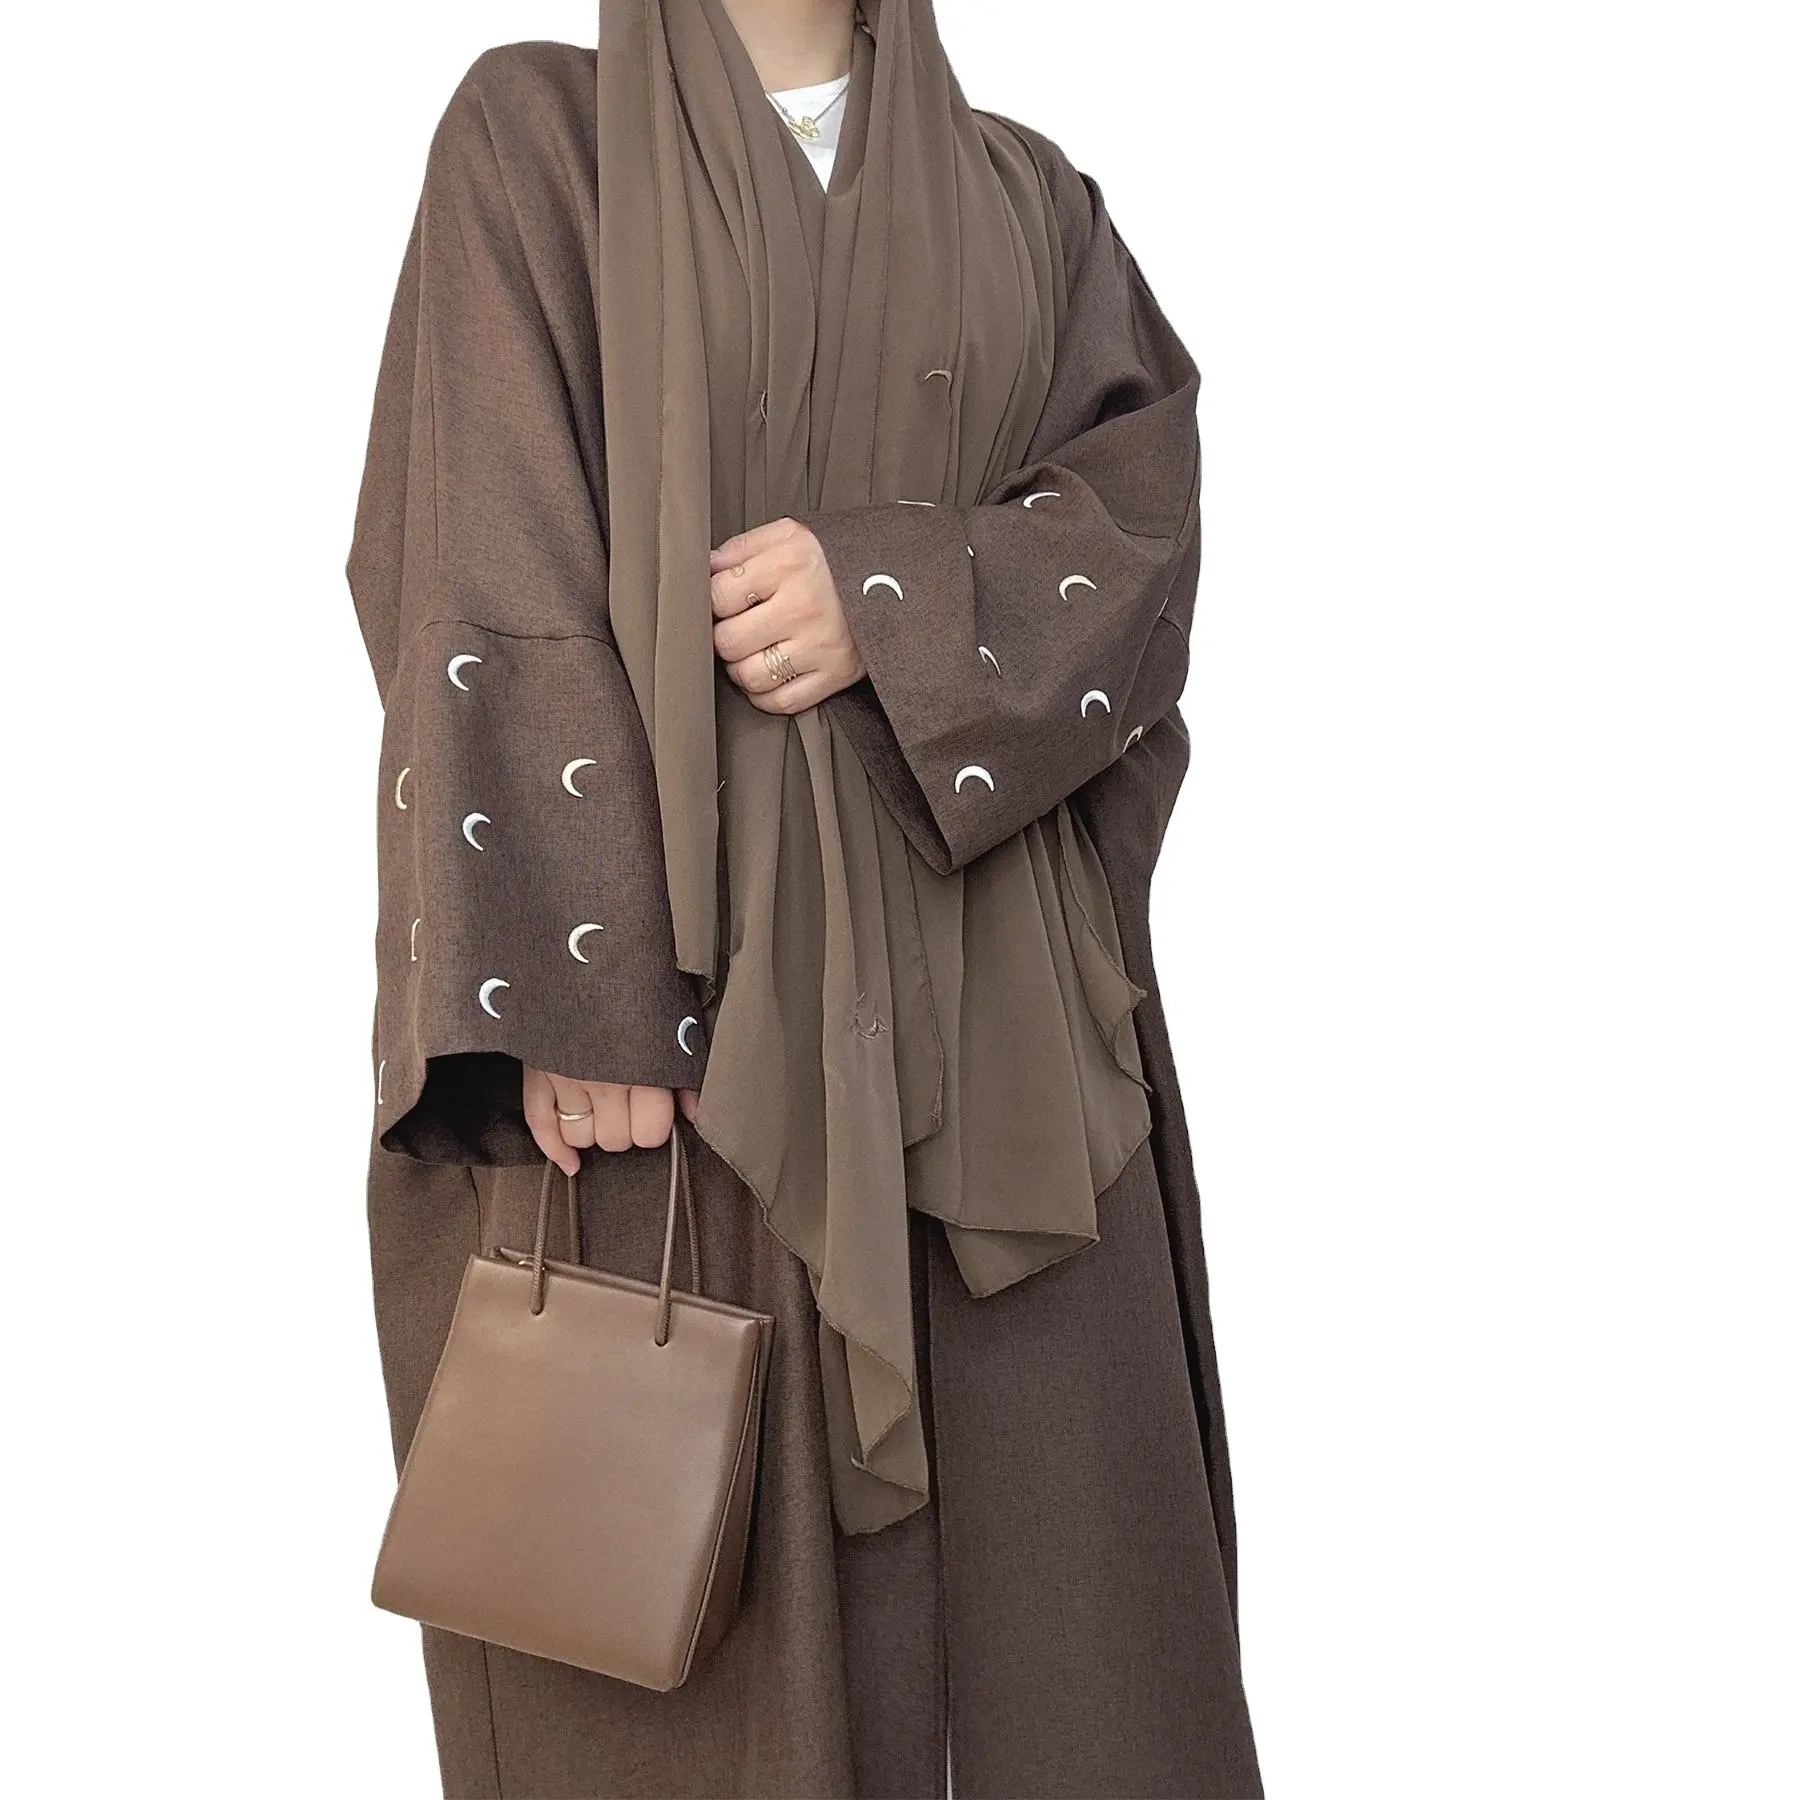 DLR327 Großhandel Nahost Dame Kleider einfarbig lange Ärmel islamische Kleidung bescheidenen Kimono plus Größe muslimischen offenen Abaya